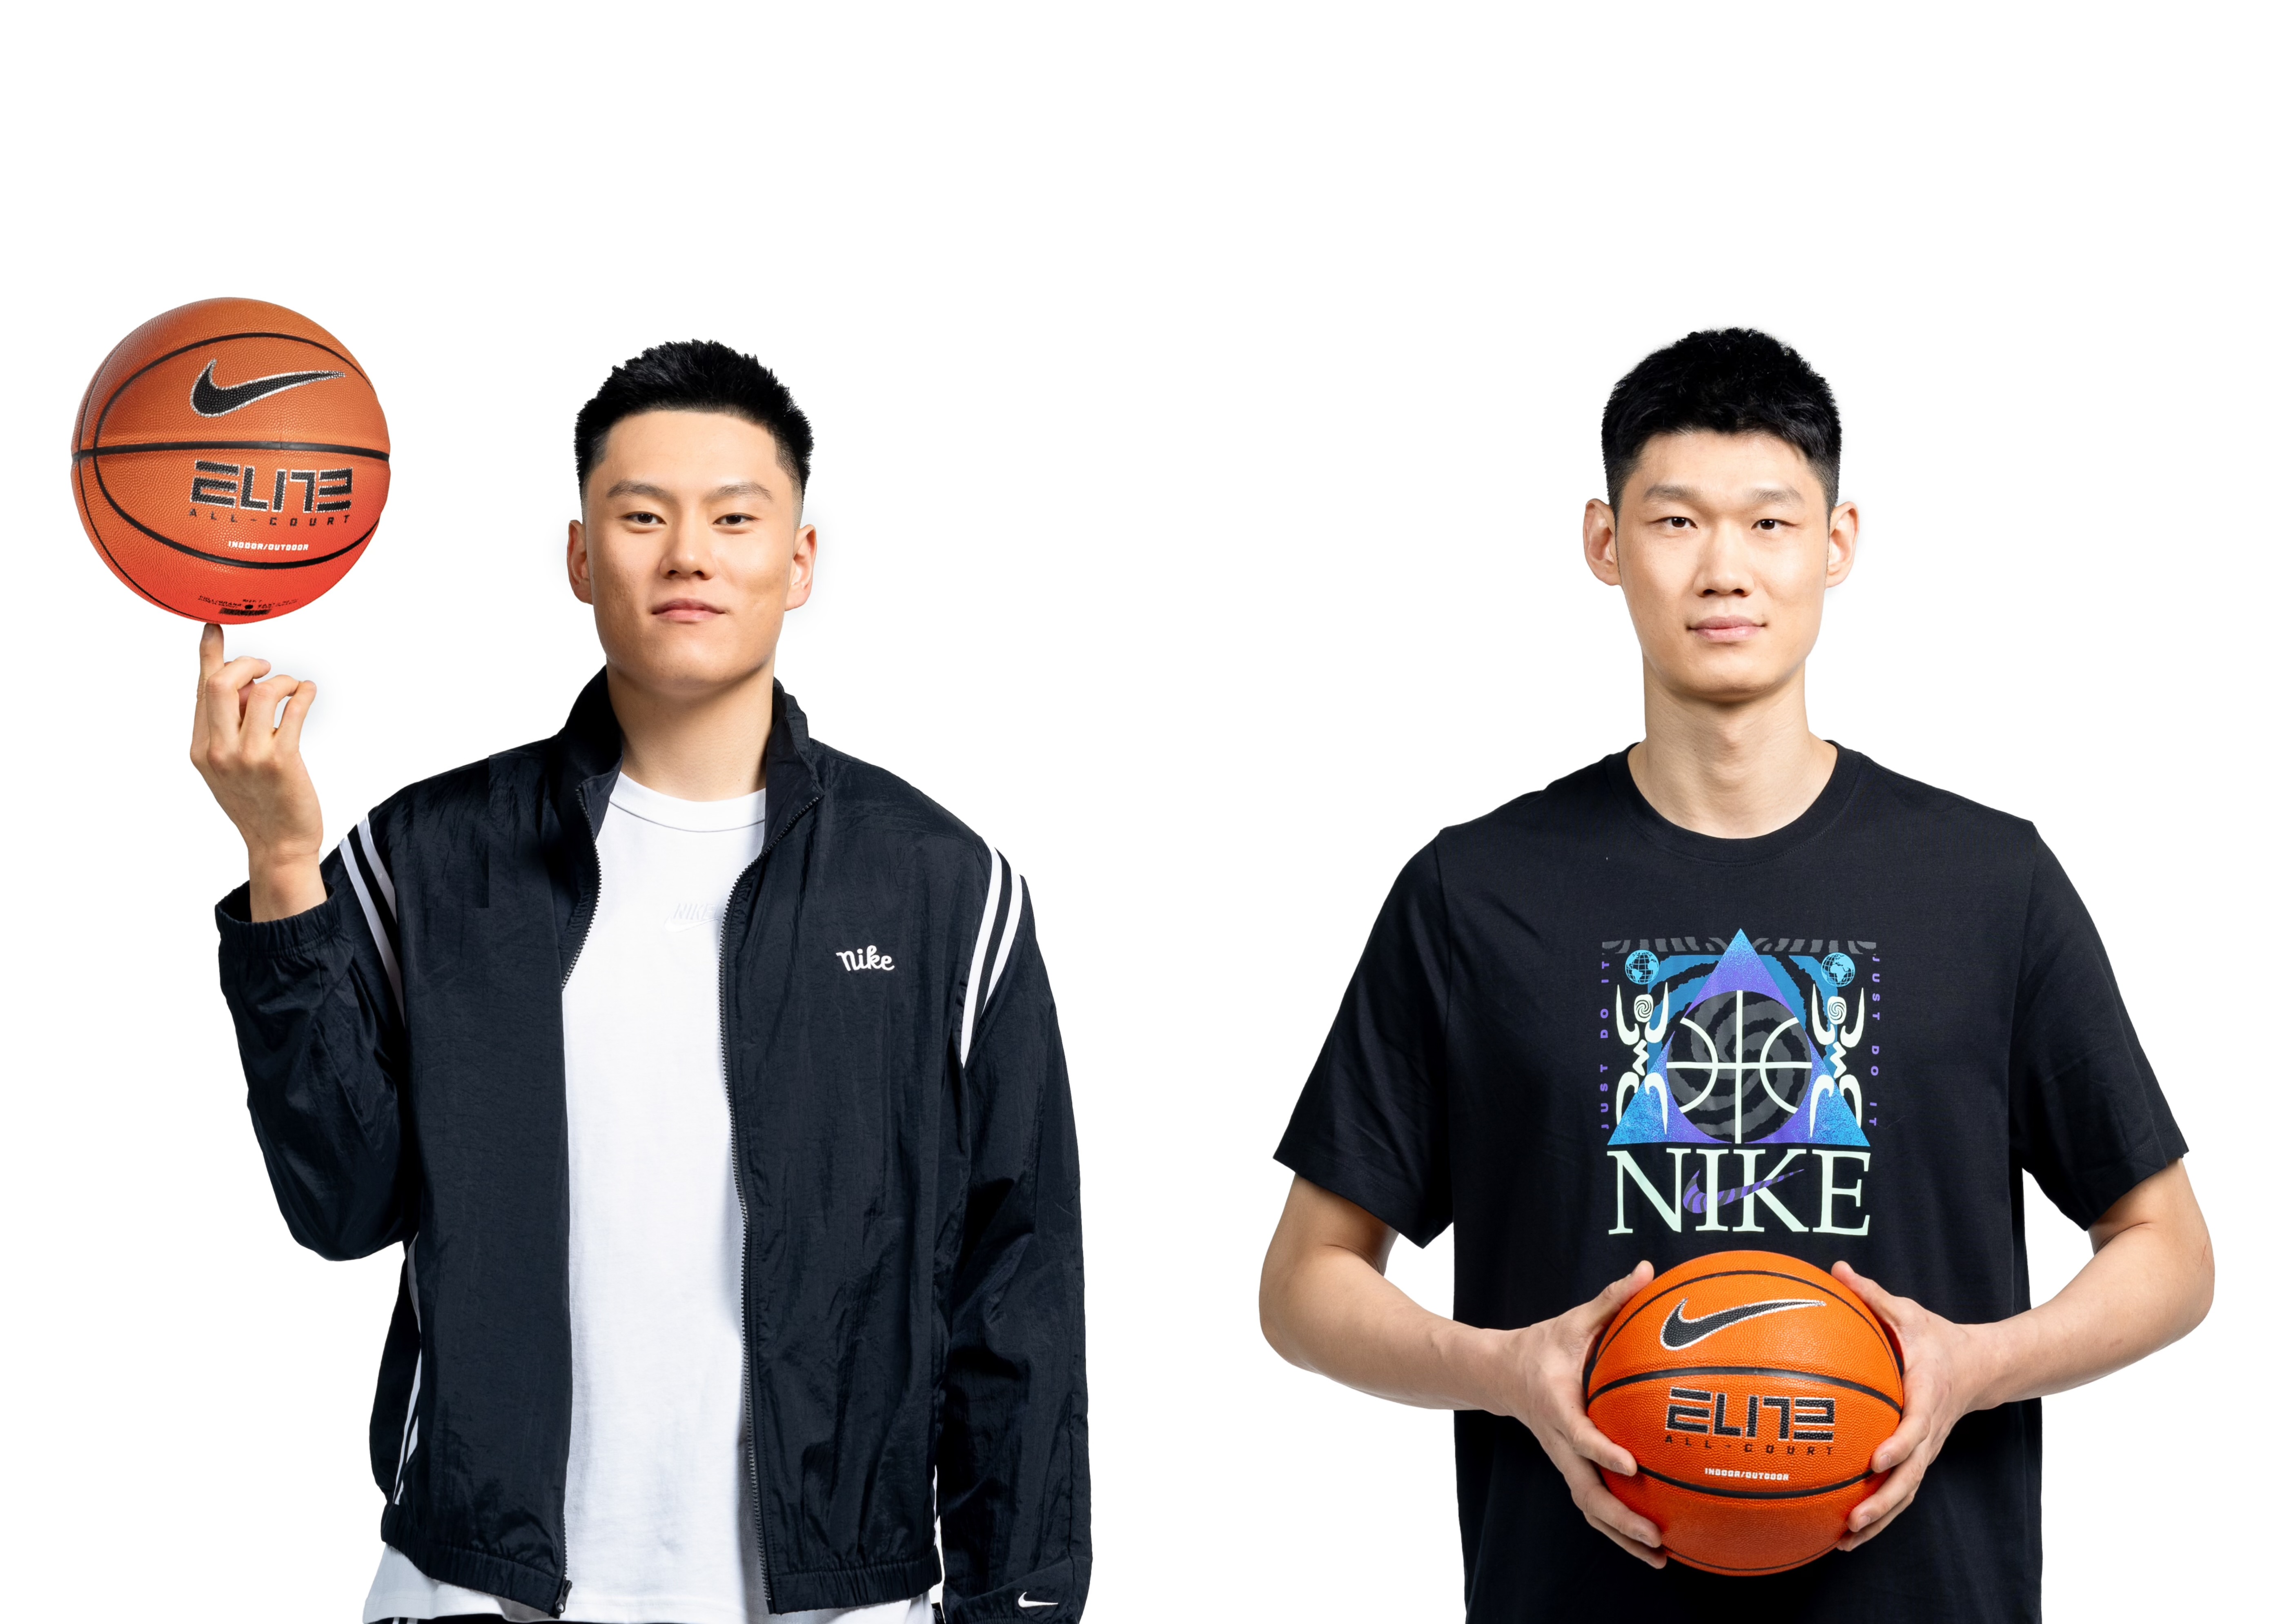 助力中国篮球发展与未来，耐克篮球大家庭欢迎两位新成员加入